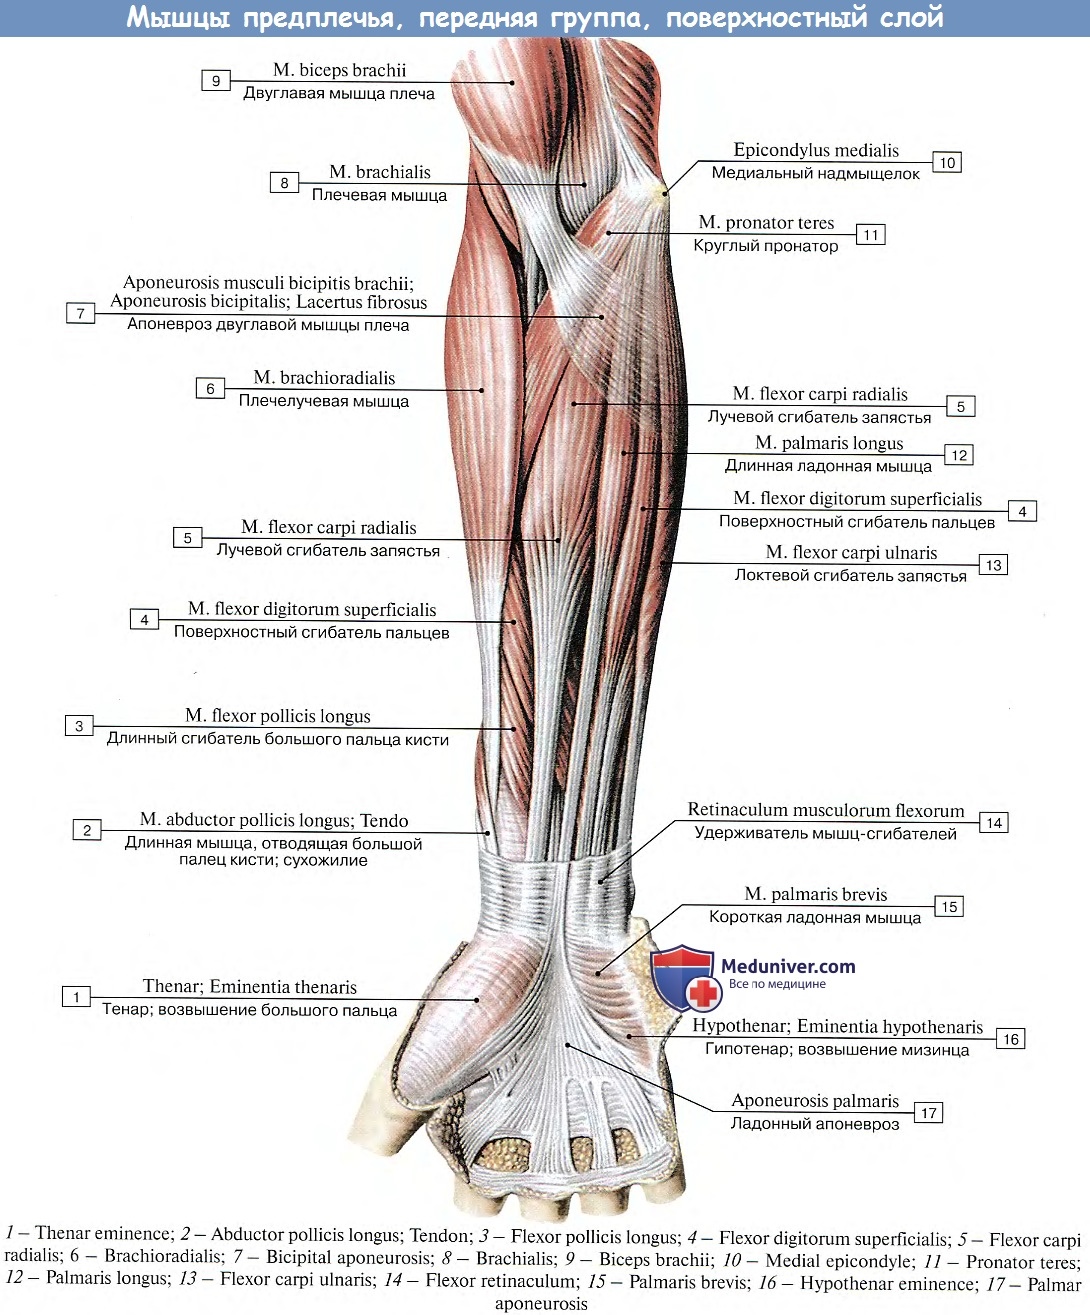 Сгибатель латынь. Передняя группа мышц предплечья первый слой. Мышцы локтевого сустава анатомия. Мышцы предплечья передняя группа на латыни. Локтевой сгибатель кисти мышца.